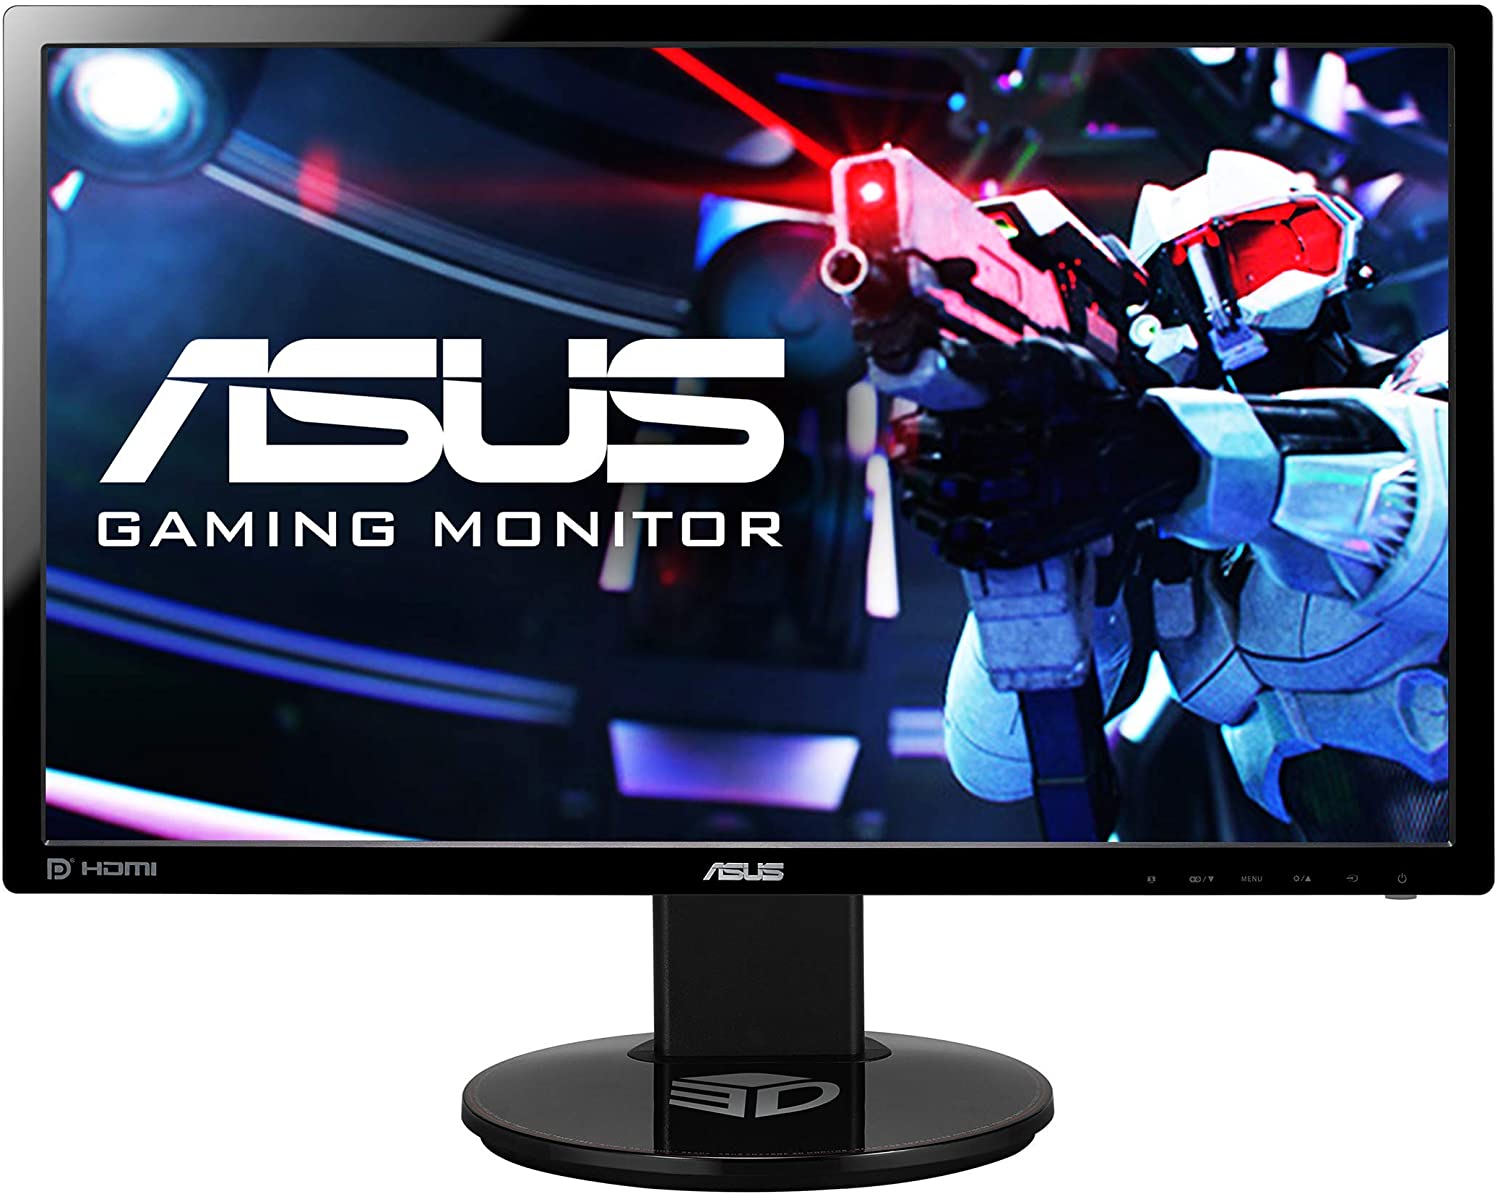 ASUS VG248QE monitor